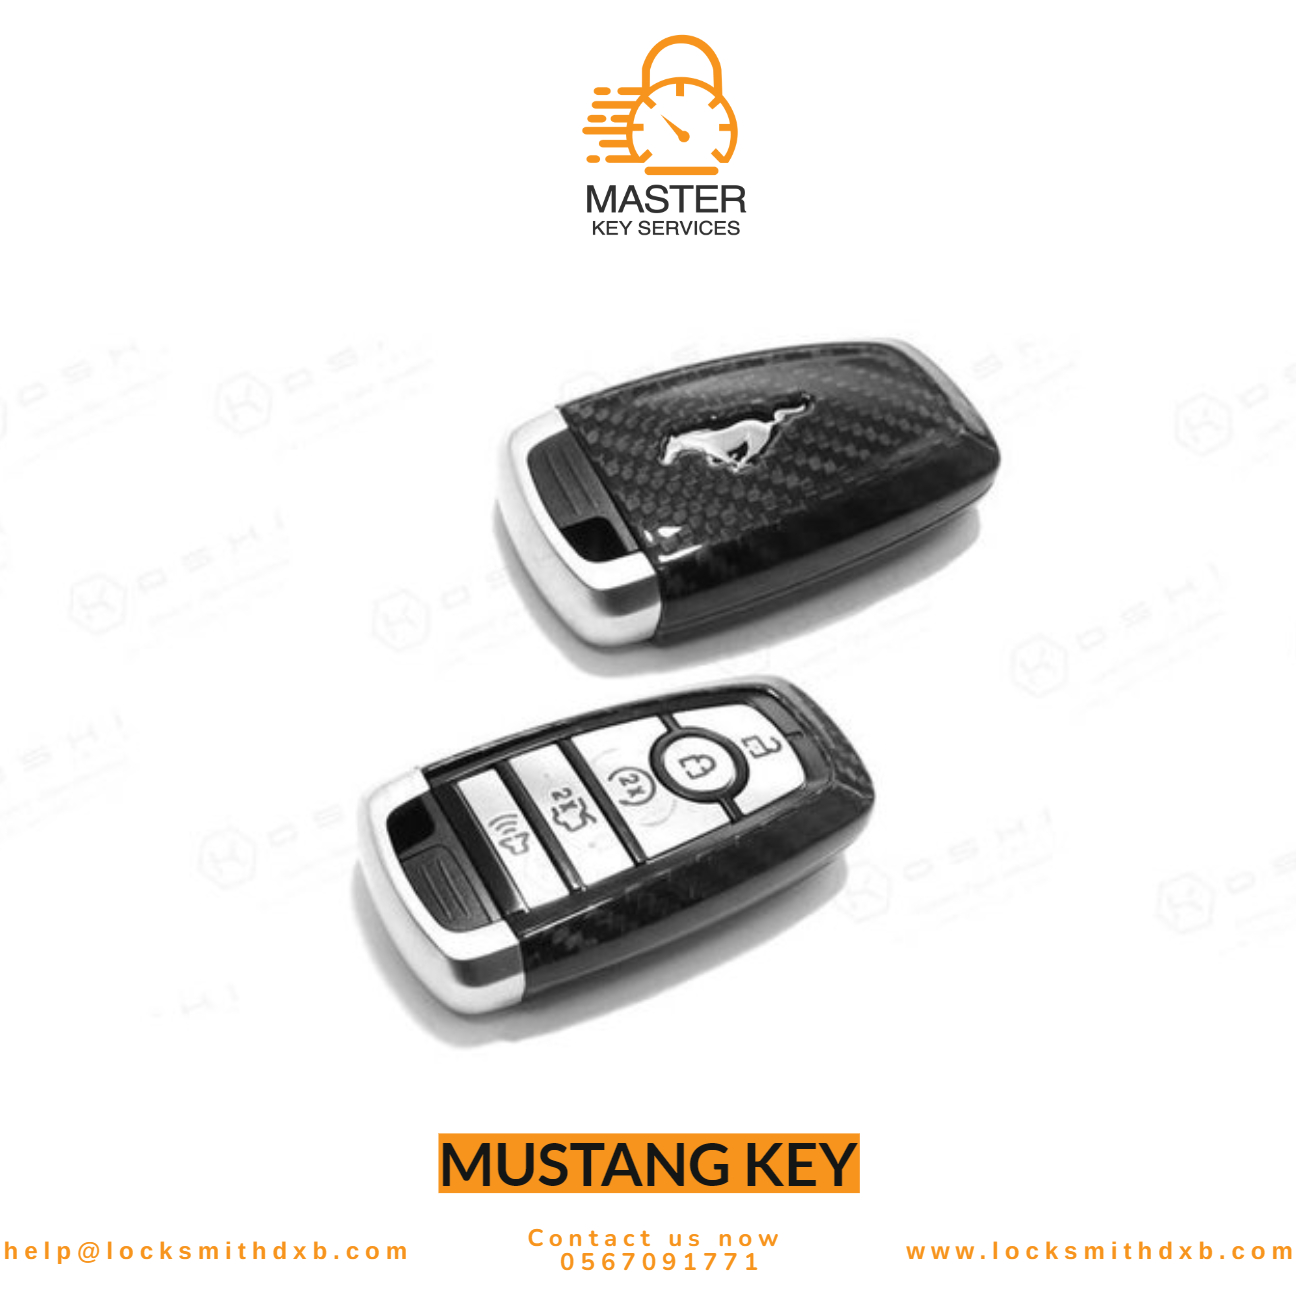 Mustang key